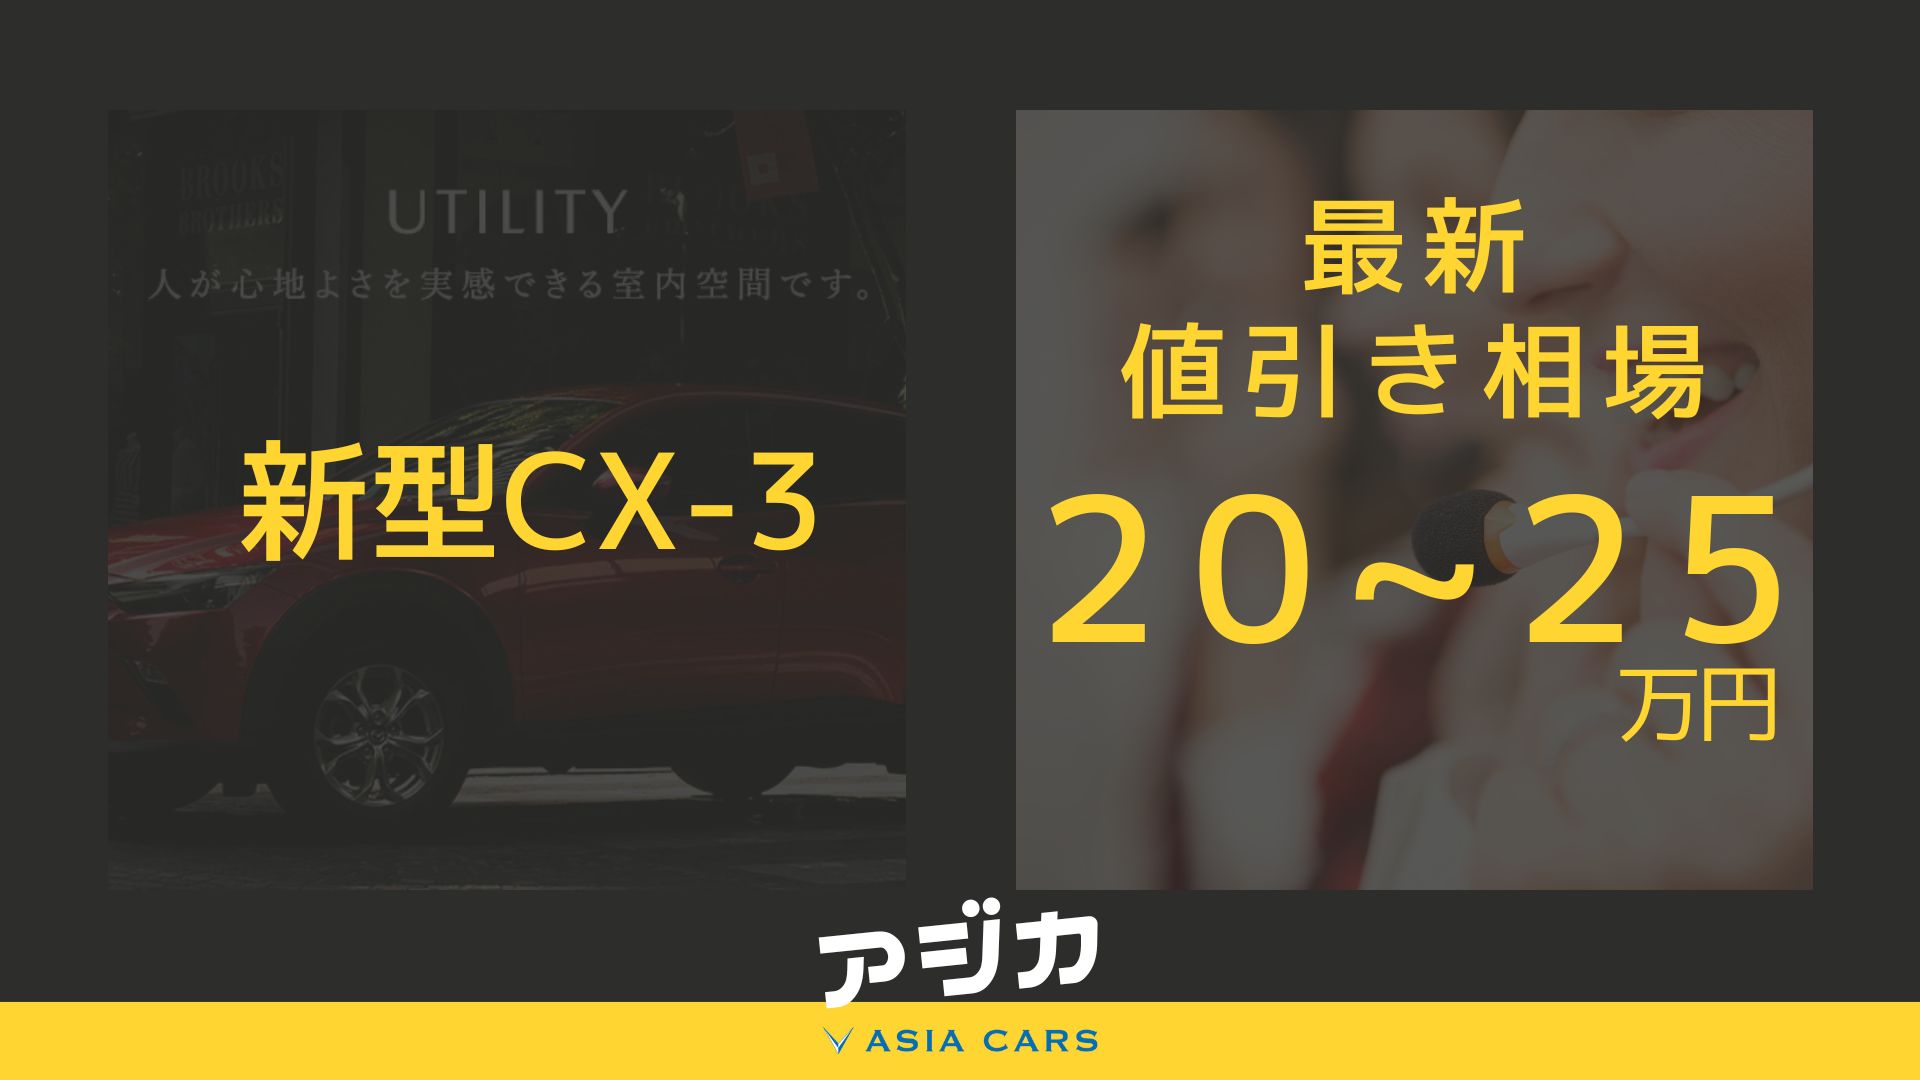 新型CX-3値引き最新情報